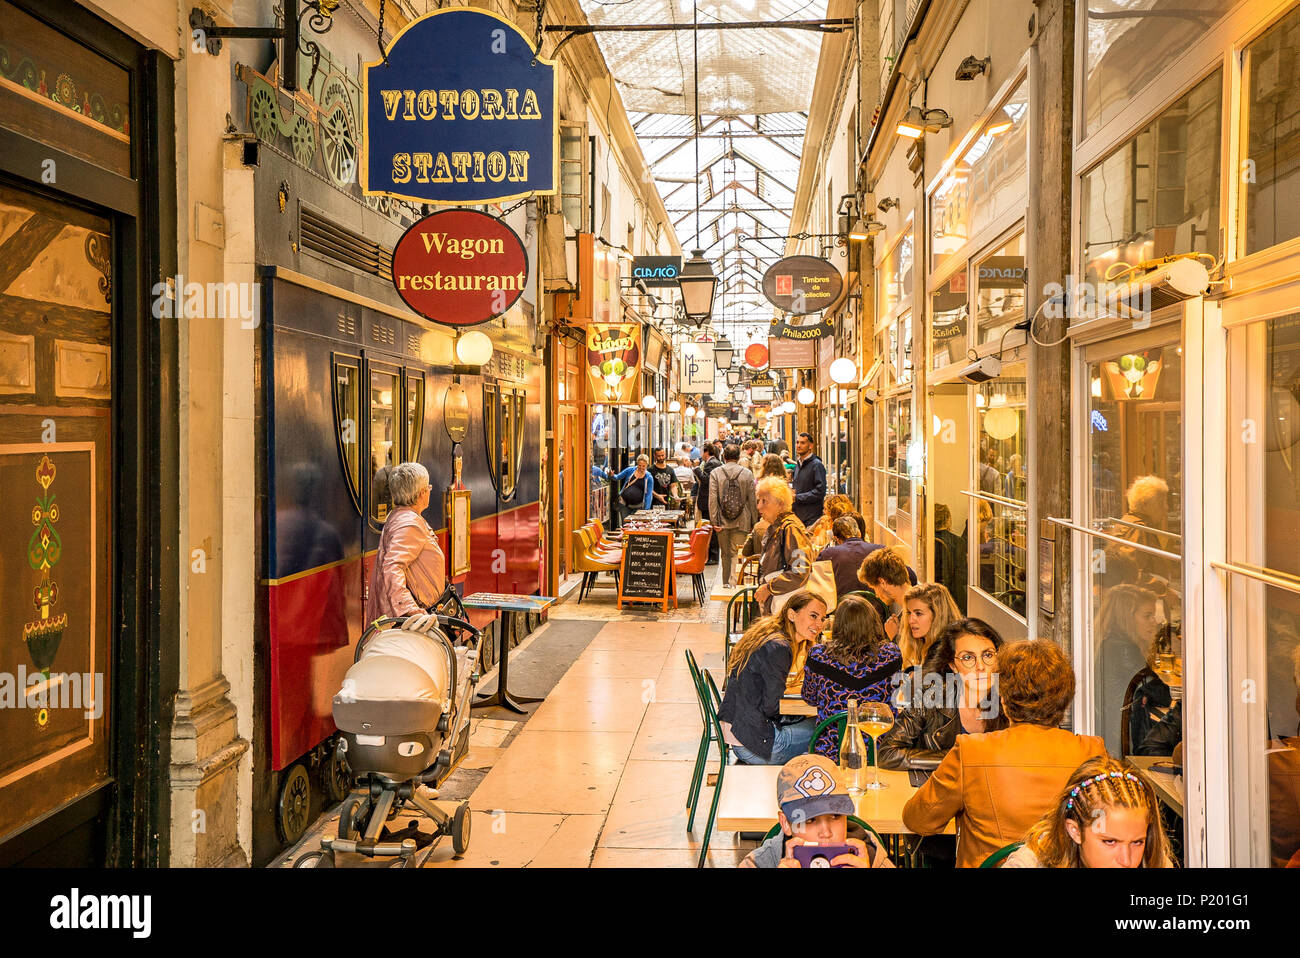 Restaurante Victoria Station dentro del Passage des Panoramas, uno de los famosos pasajes cubiertos de París. París, Francia Foto de stock